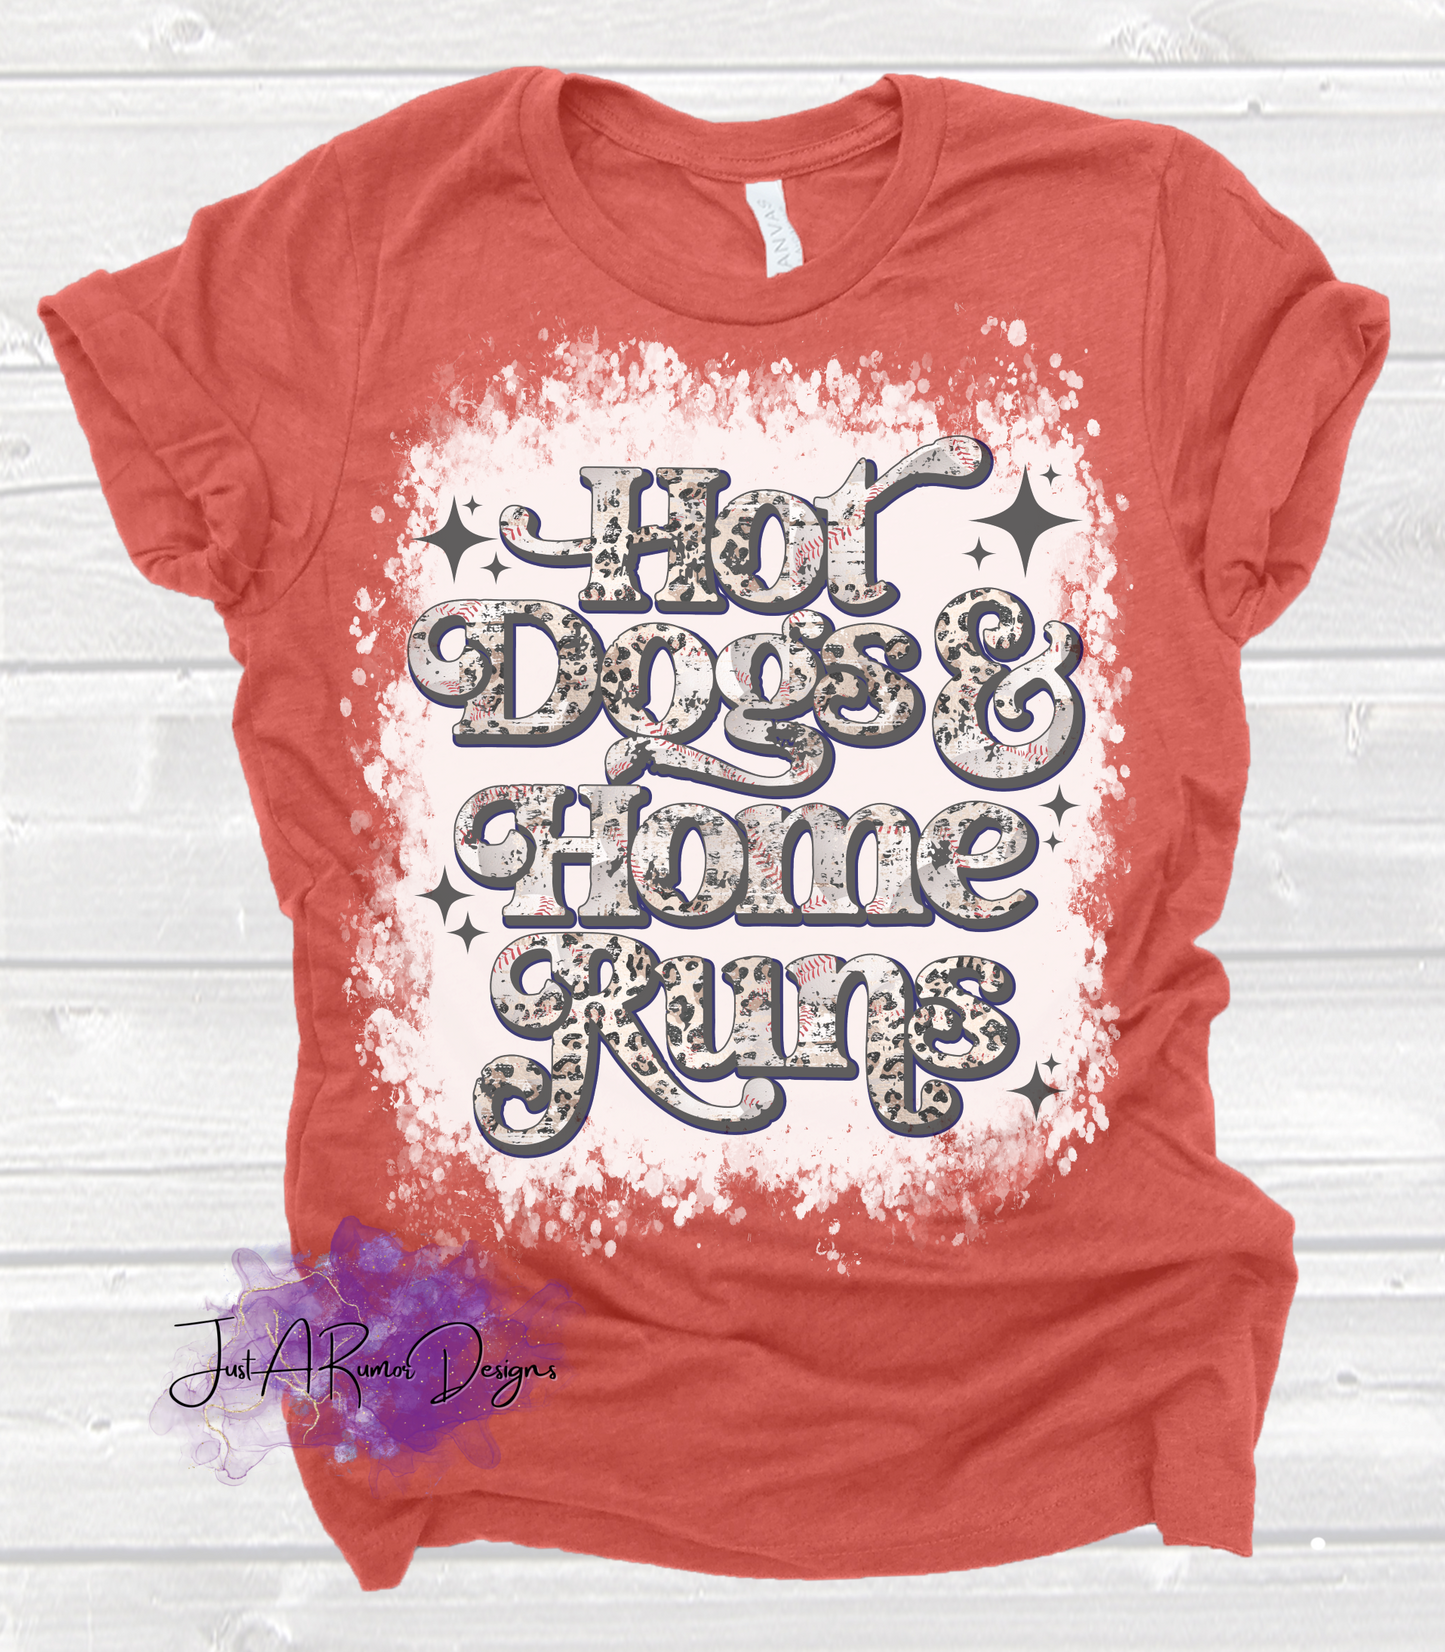 Hot Dogs & Home Runs Shirt